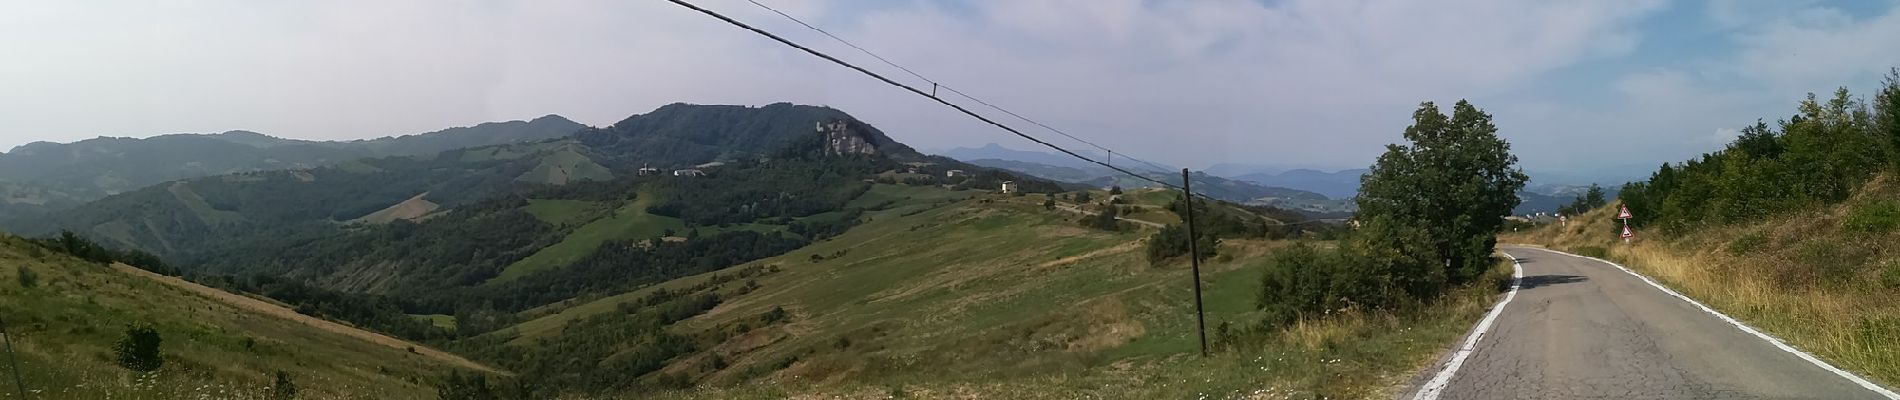 Excursión A pie Quattro Castella - Corticella - San Polo - Vico - Rossena - Braglie - Selvapiana - Monchio dell'Olle - Sentiero dei Ducati - Photo